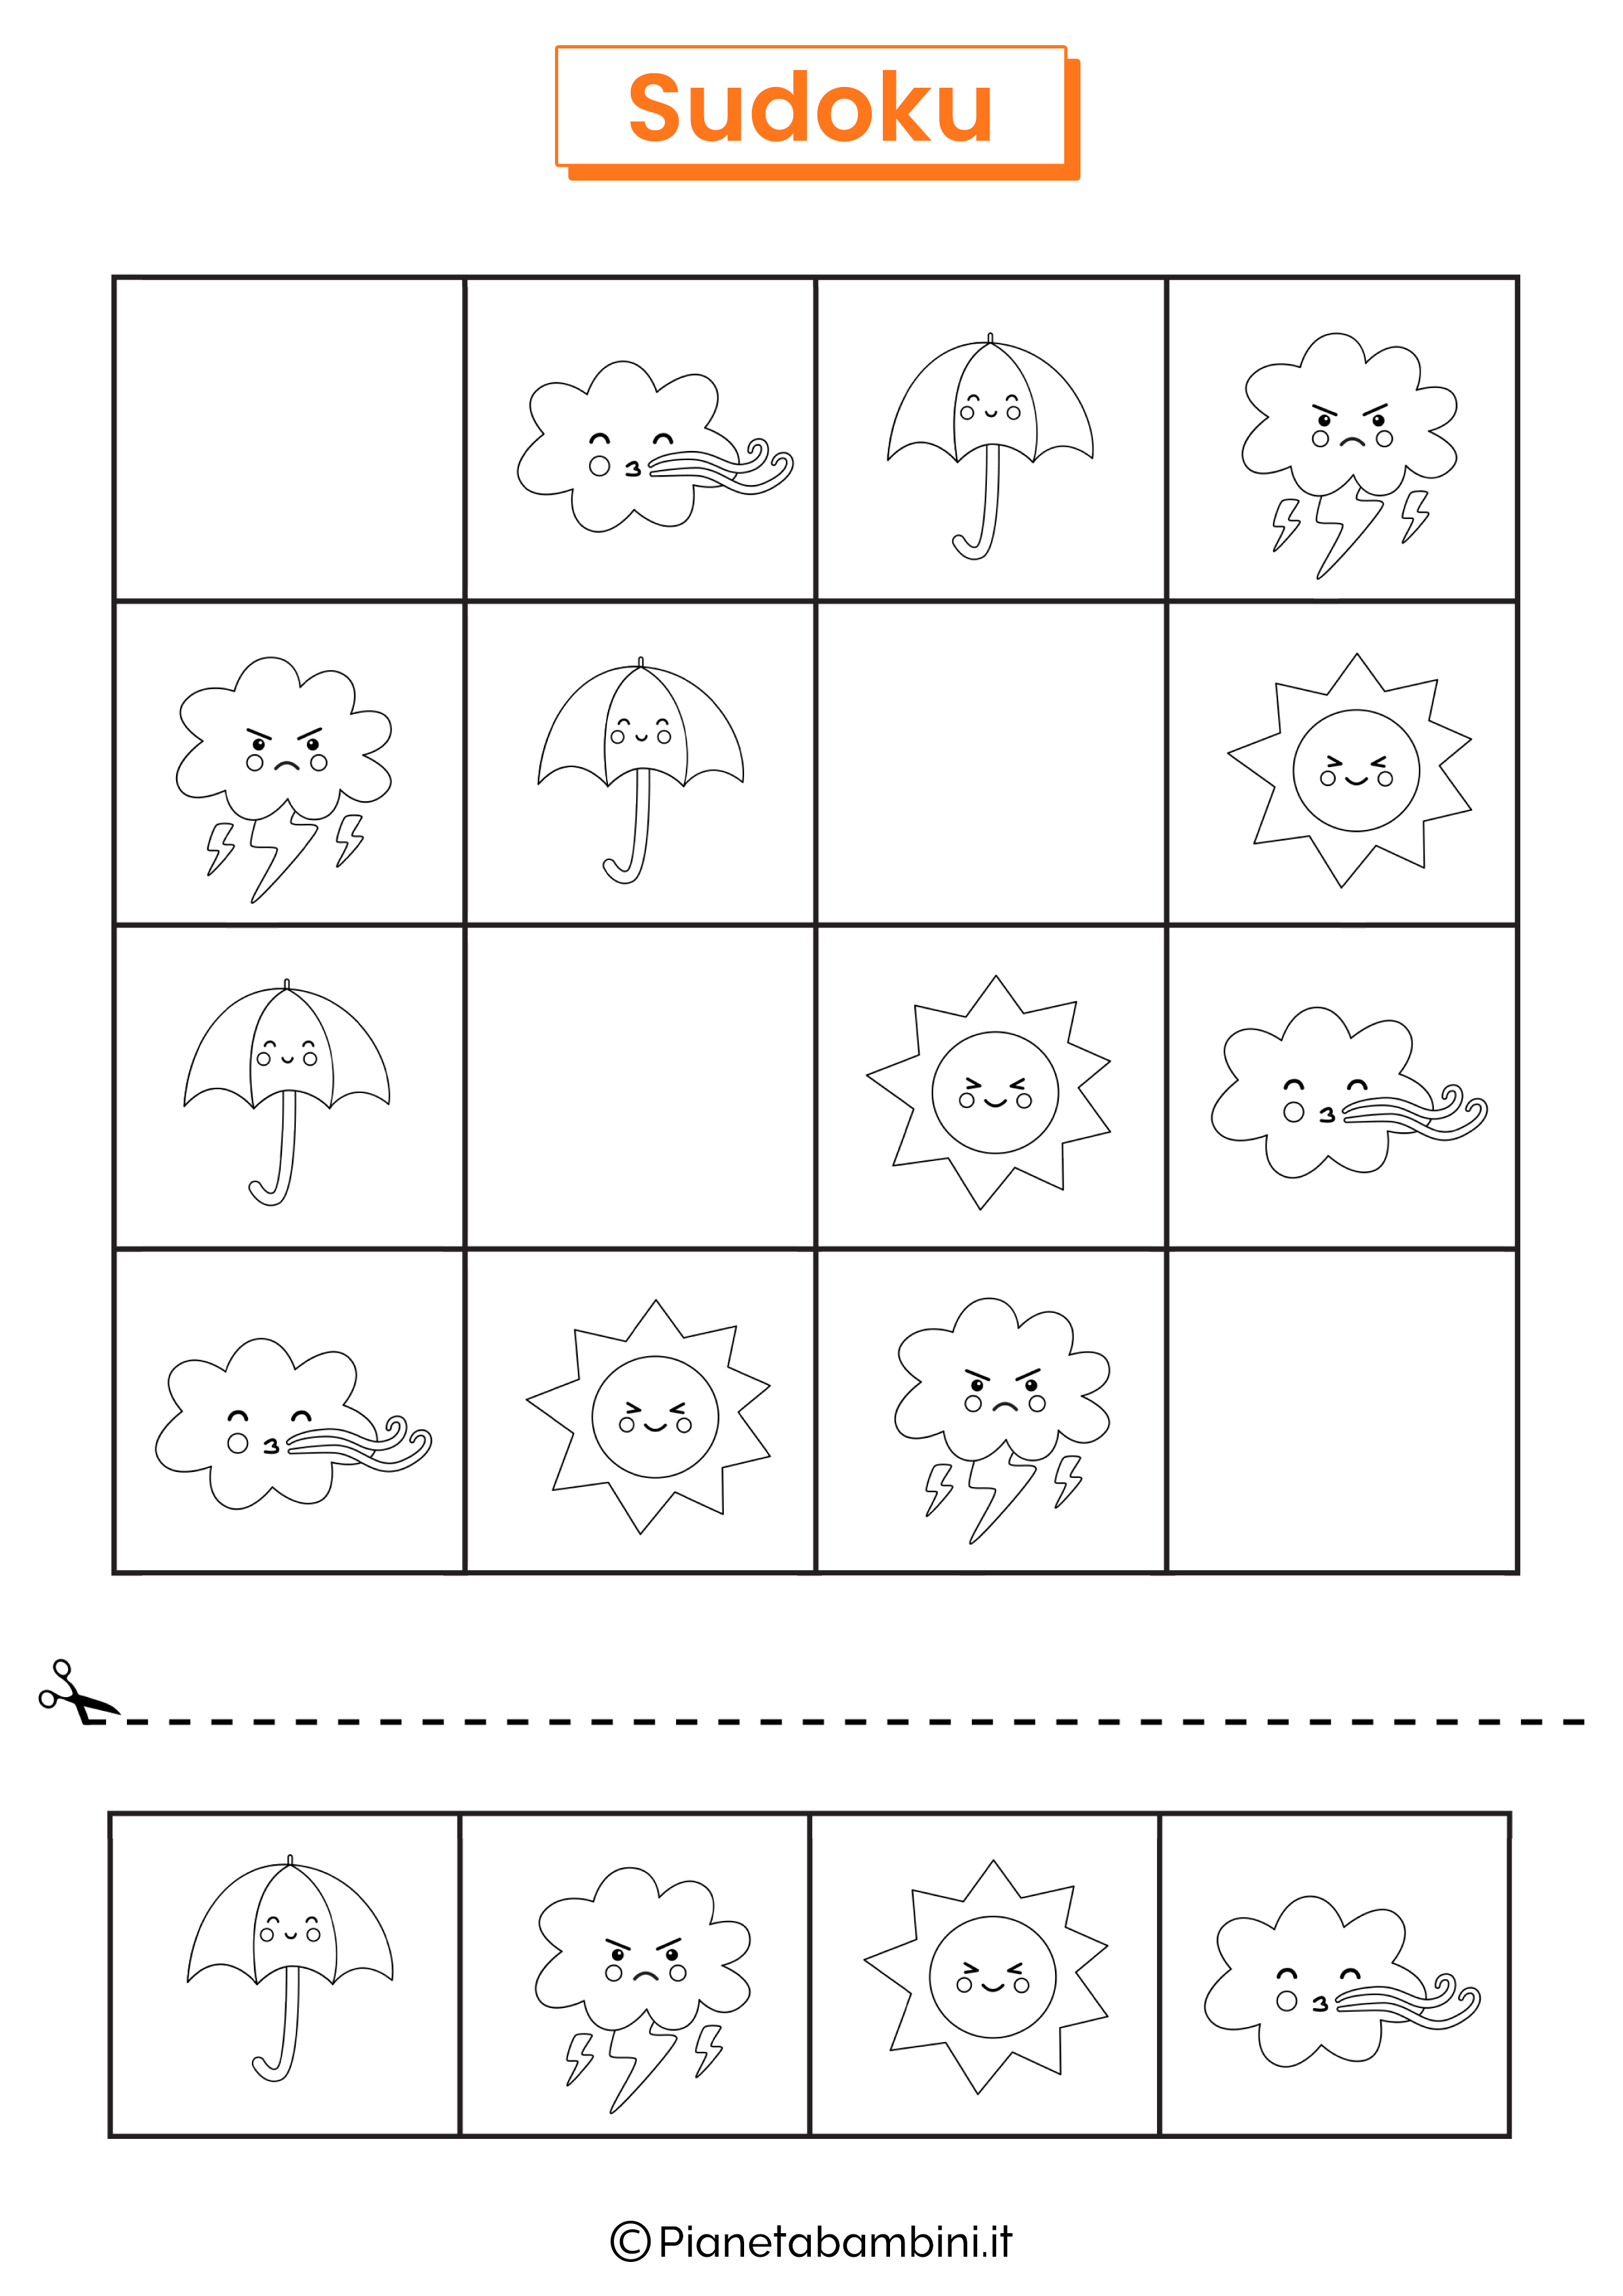 Sudoku Immagini bianco e nero 10